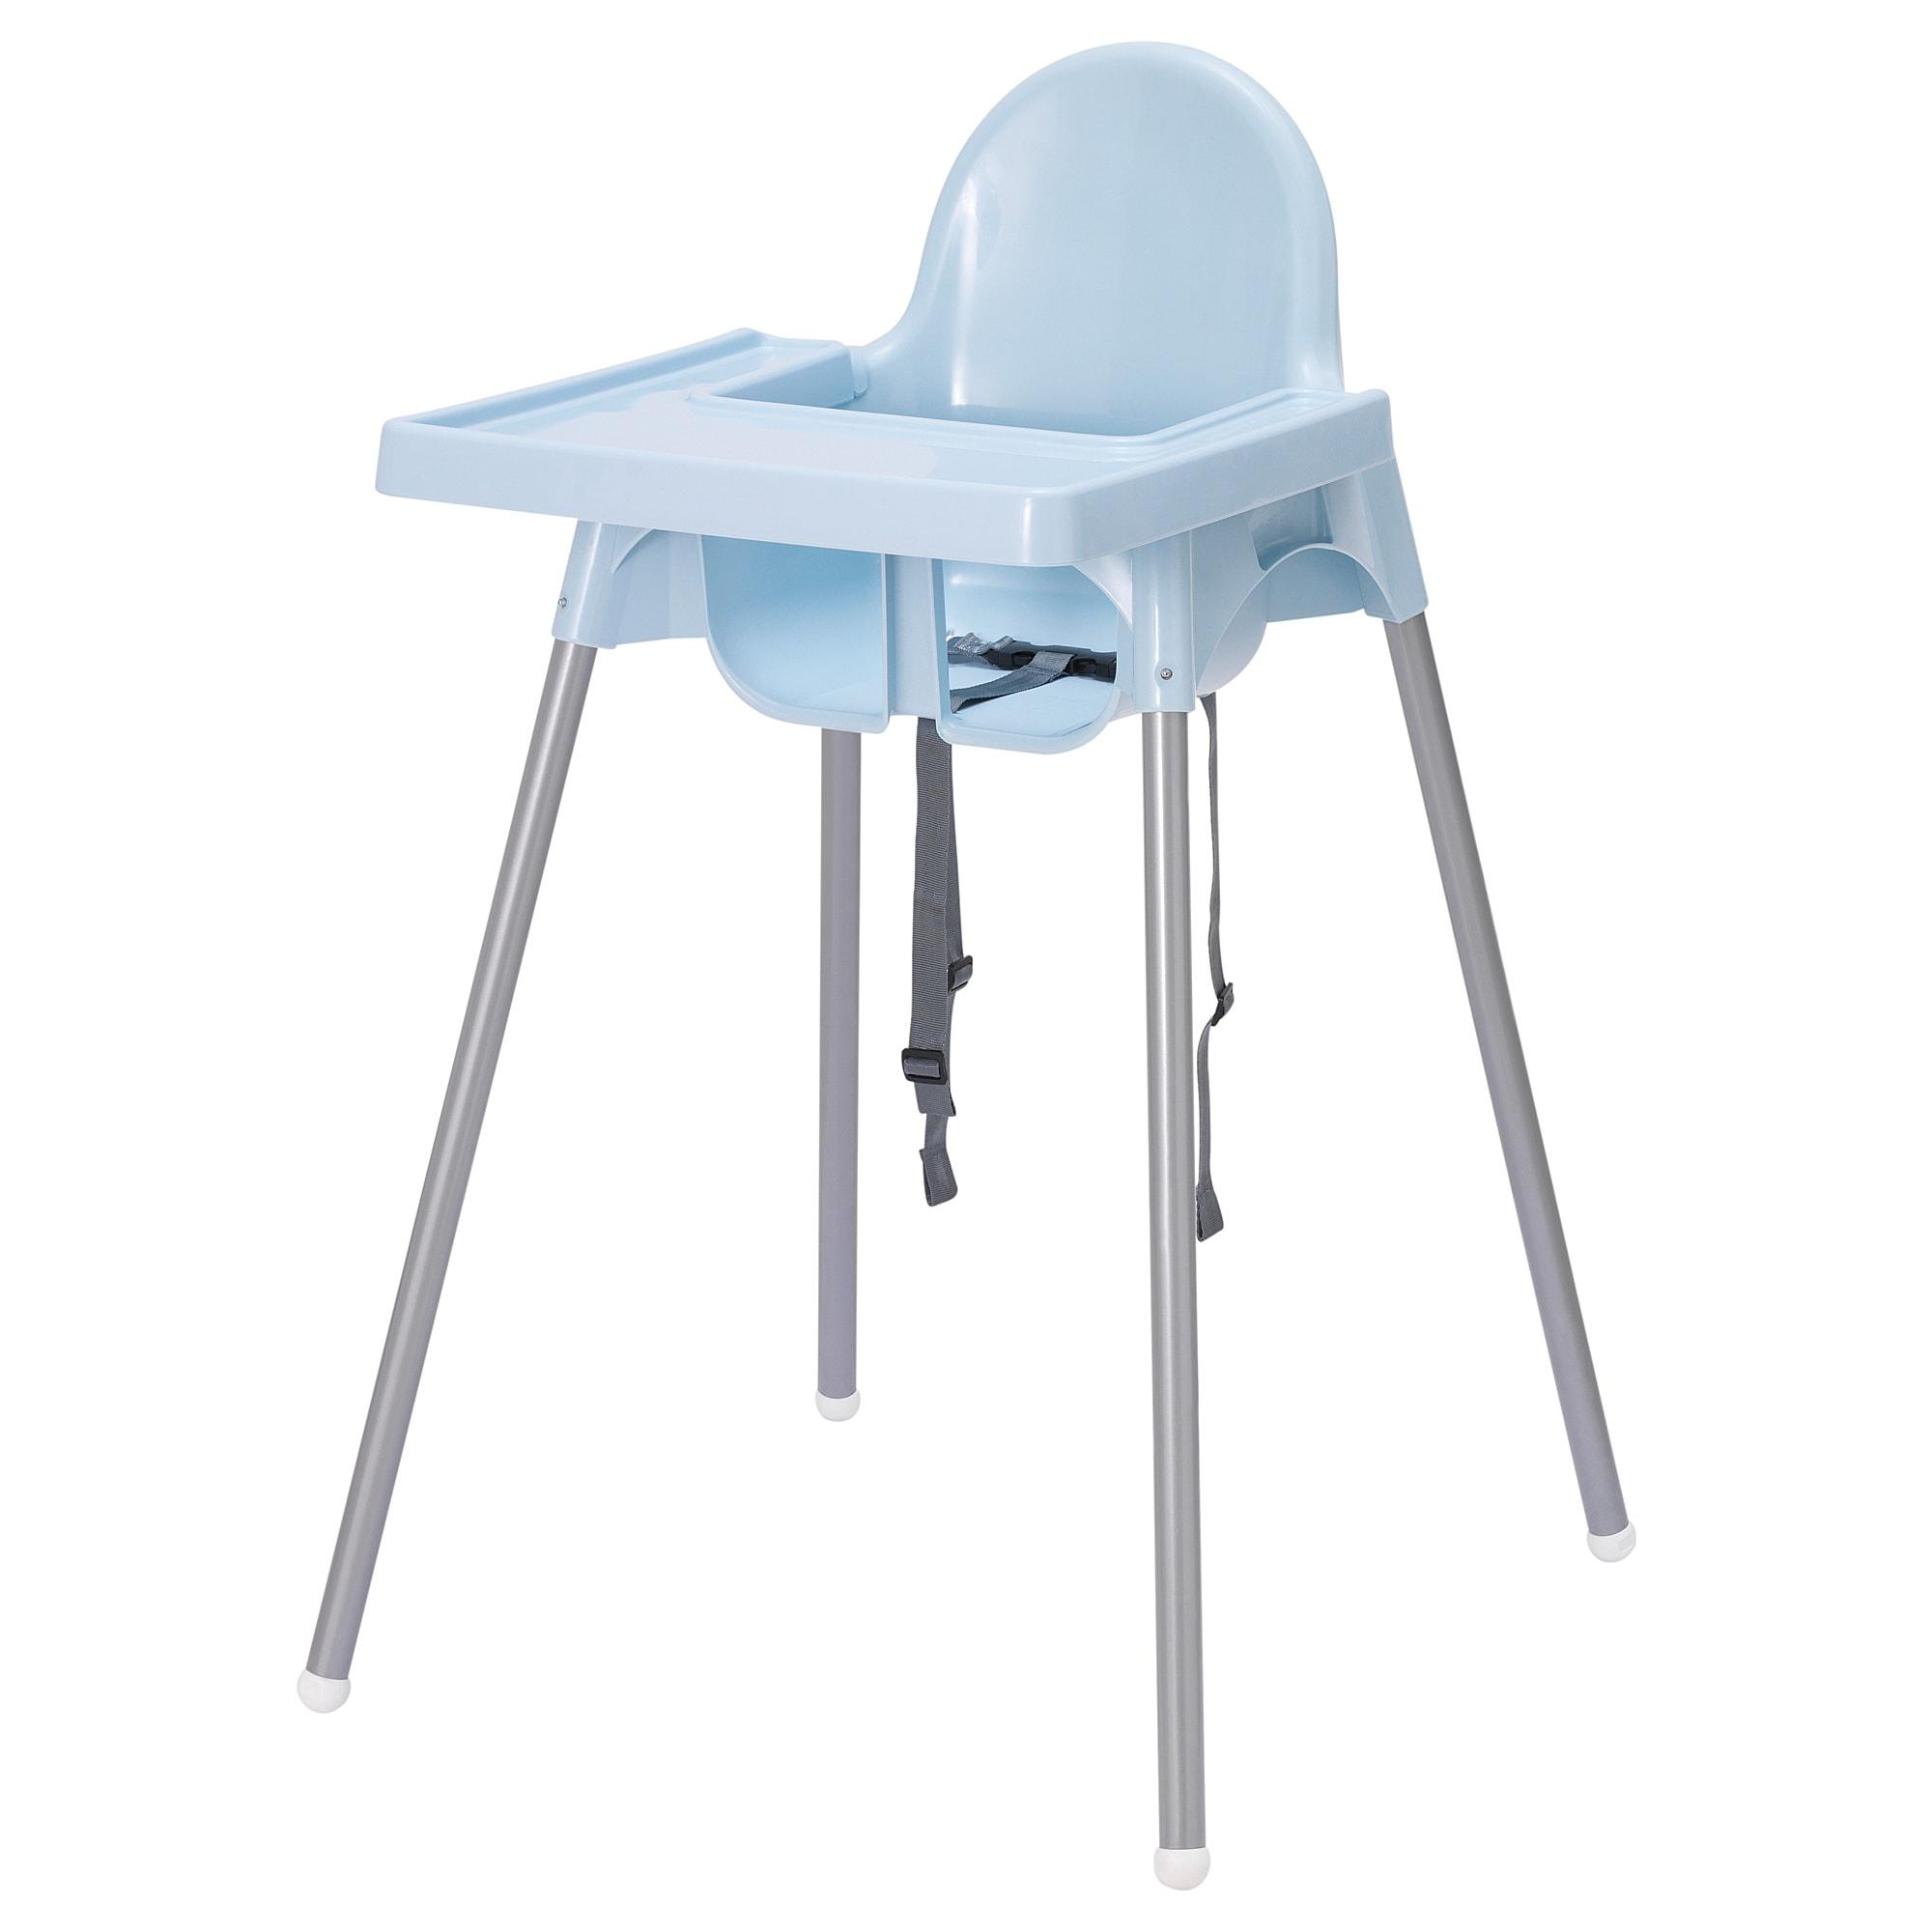 ราคาพิเศษ เก้าอี้นั่งกินข้าวสำหรับเด็ก พร้อมถาดวางอาหาร ANTILOP อันติลูป สีฟ้าอ่อน จาก IKEA